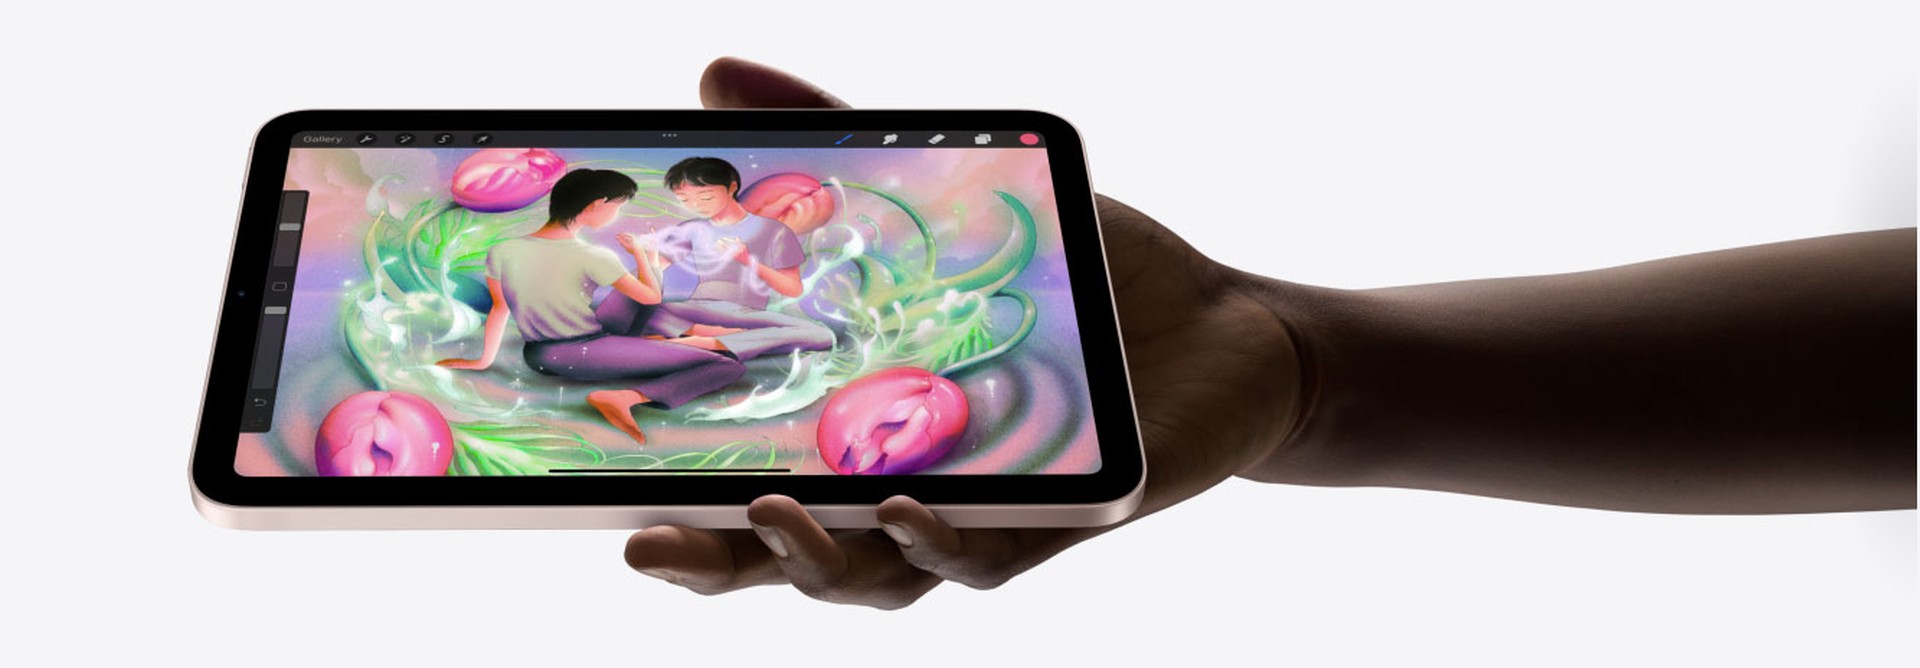 iPad Mini 6 má veľký 8,3" Liquid Retina displej, pritom váži iba 297 g a je tenký 6,3 mm.